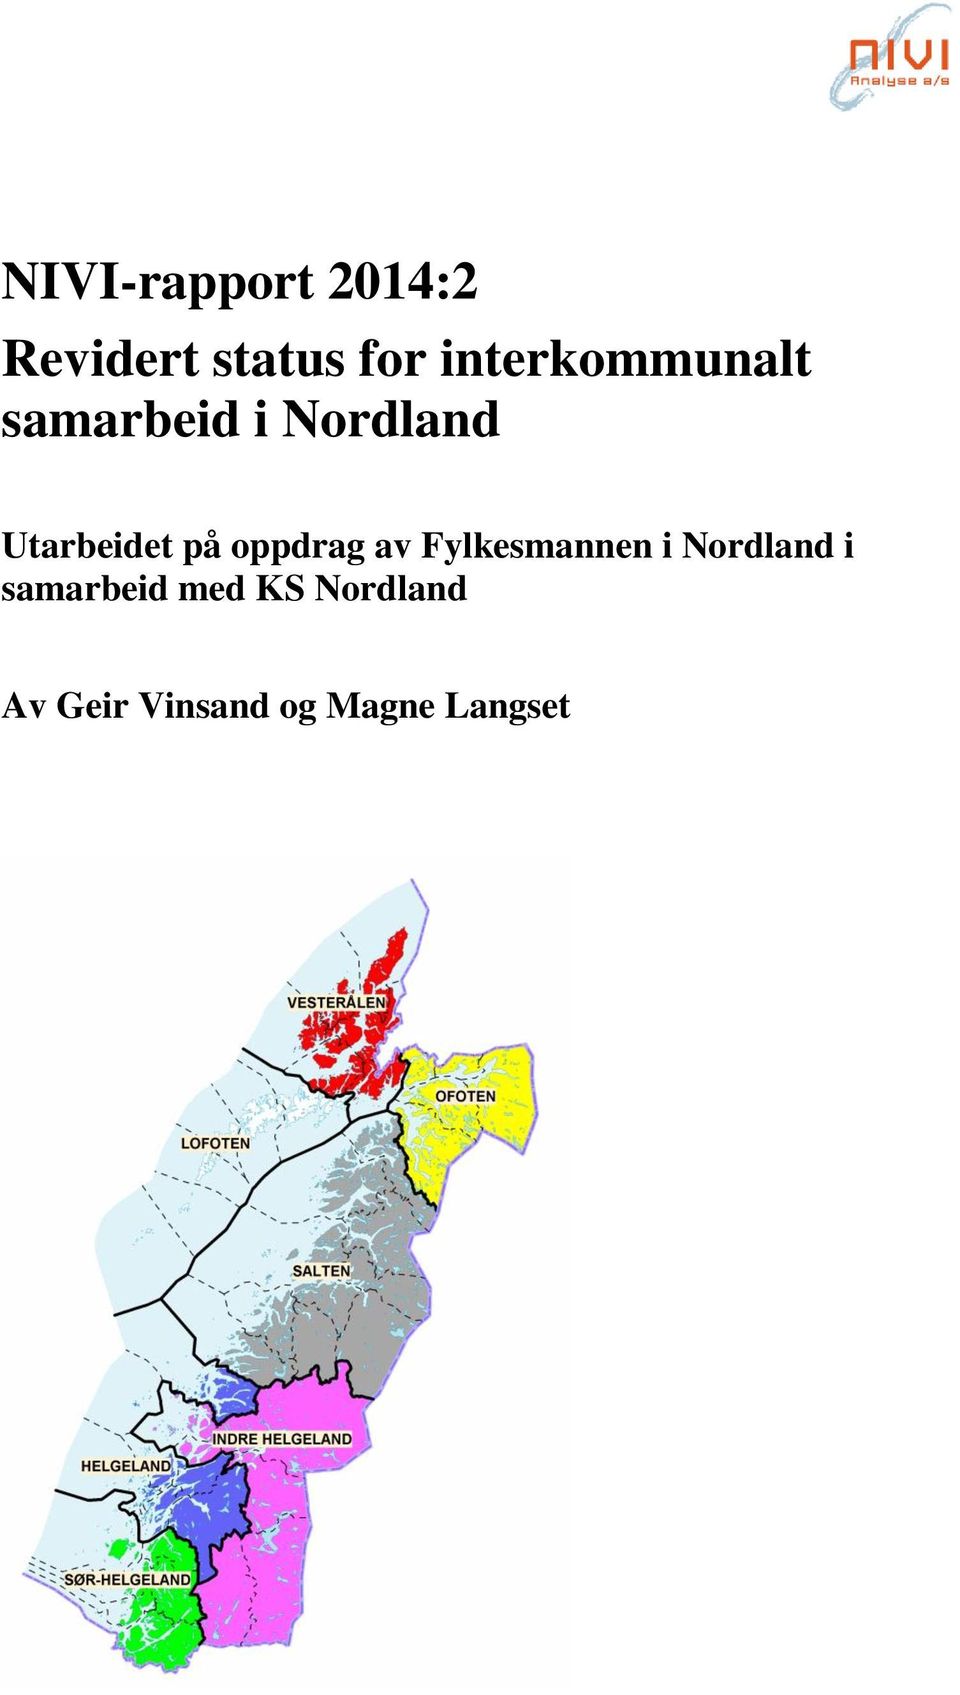 Utarbeidet på oppdrag av Fylkesmannen i Nordland